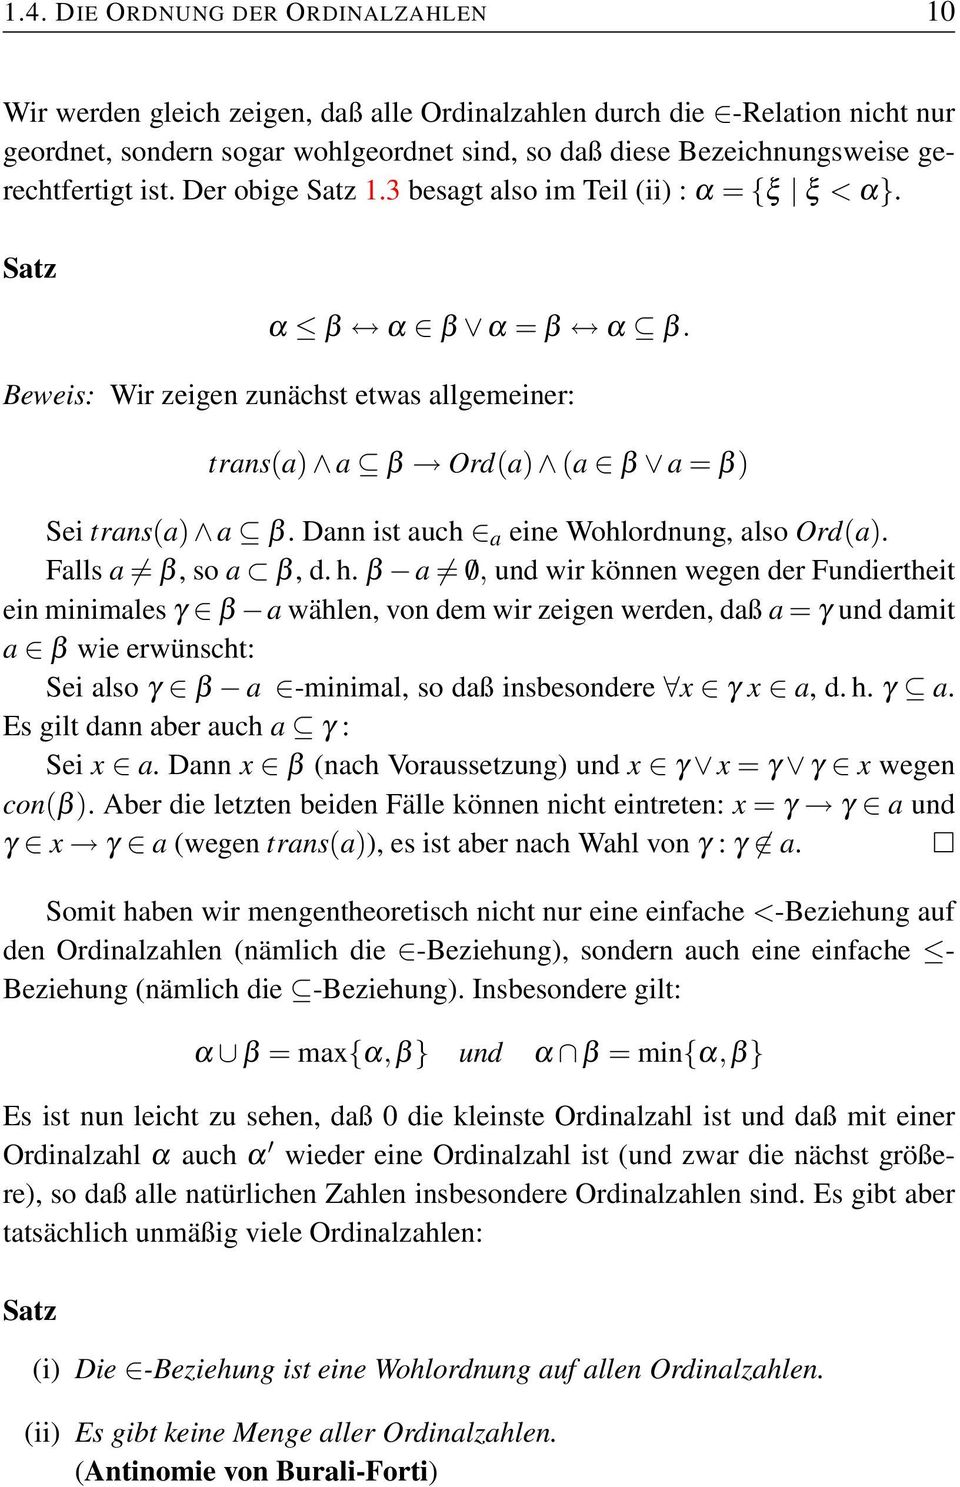 Beweis: Wir zeigen zunächst etwas allgemeiner: trans(a) a β Ord(a) (a β a = β) Sei trans(a) a β. Dann ist auch a eine Wohlordnung, also Ord(a). Falls a β, so a β, d. h.